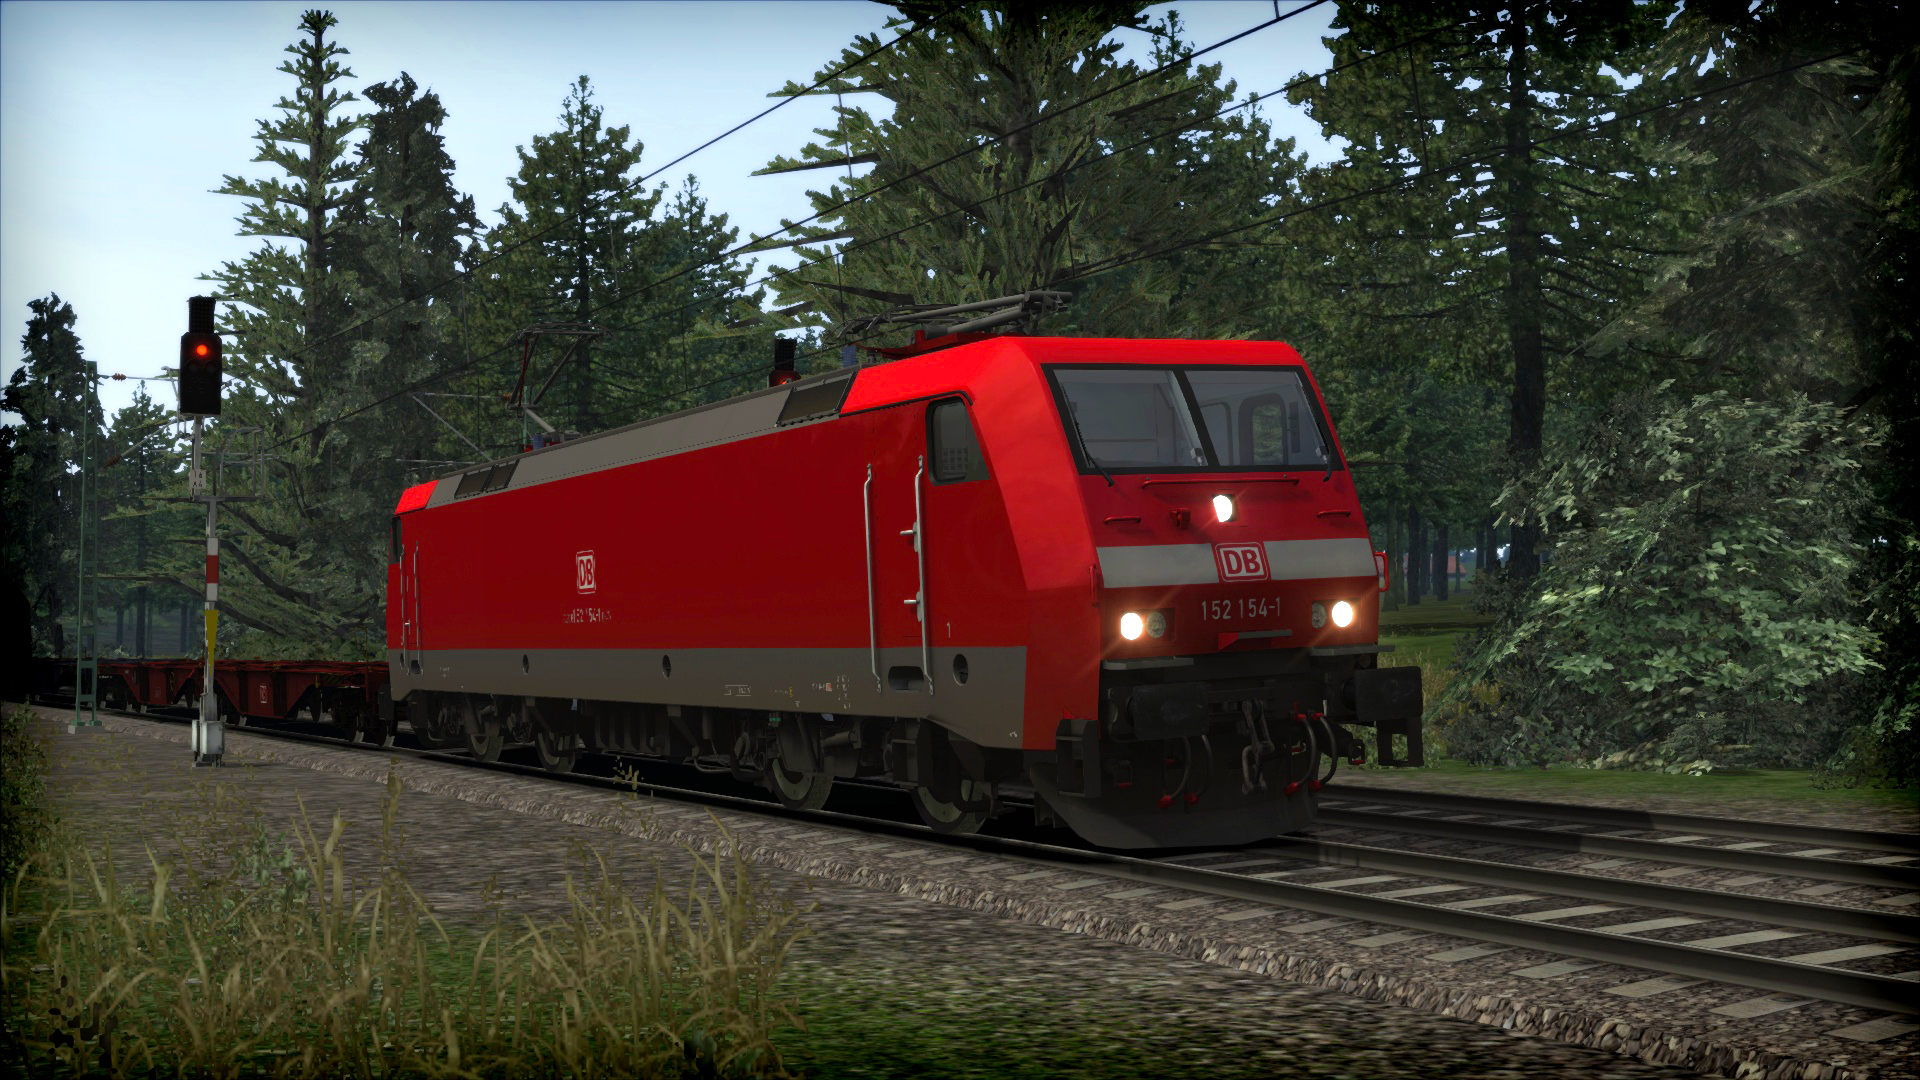 Train Simulator: DB BR 152 Loco Add-On screenshot